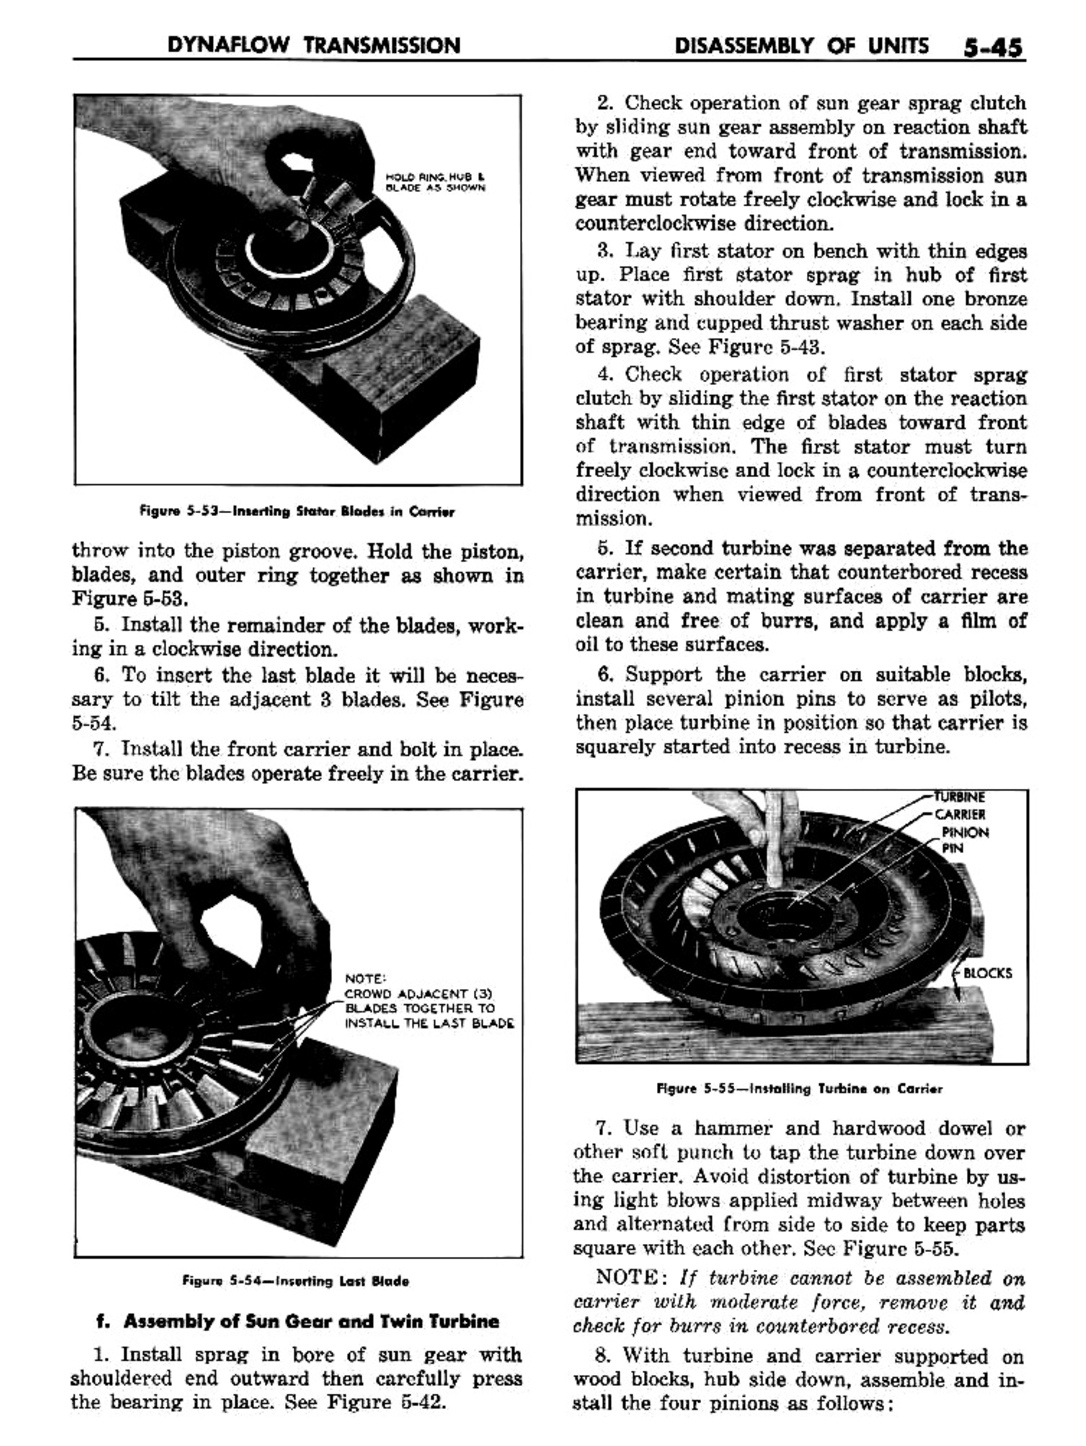 n_06 1957 Buick Shop Manual - Dynaflow-045-045.jpg